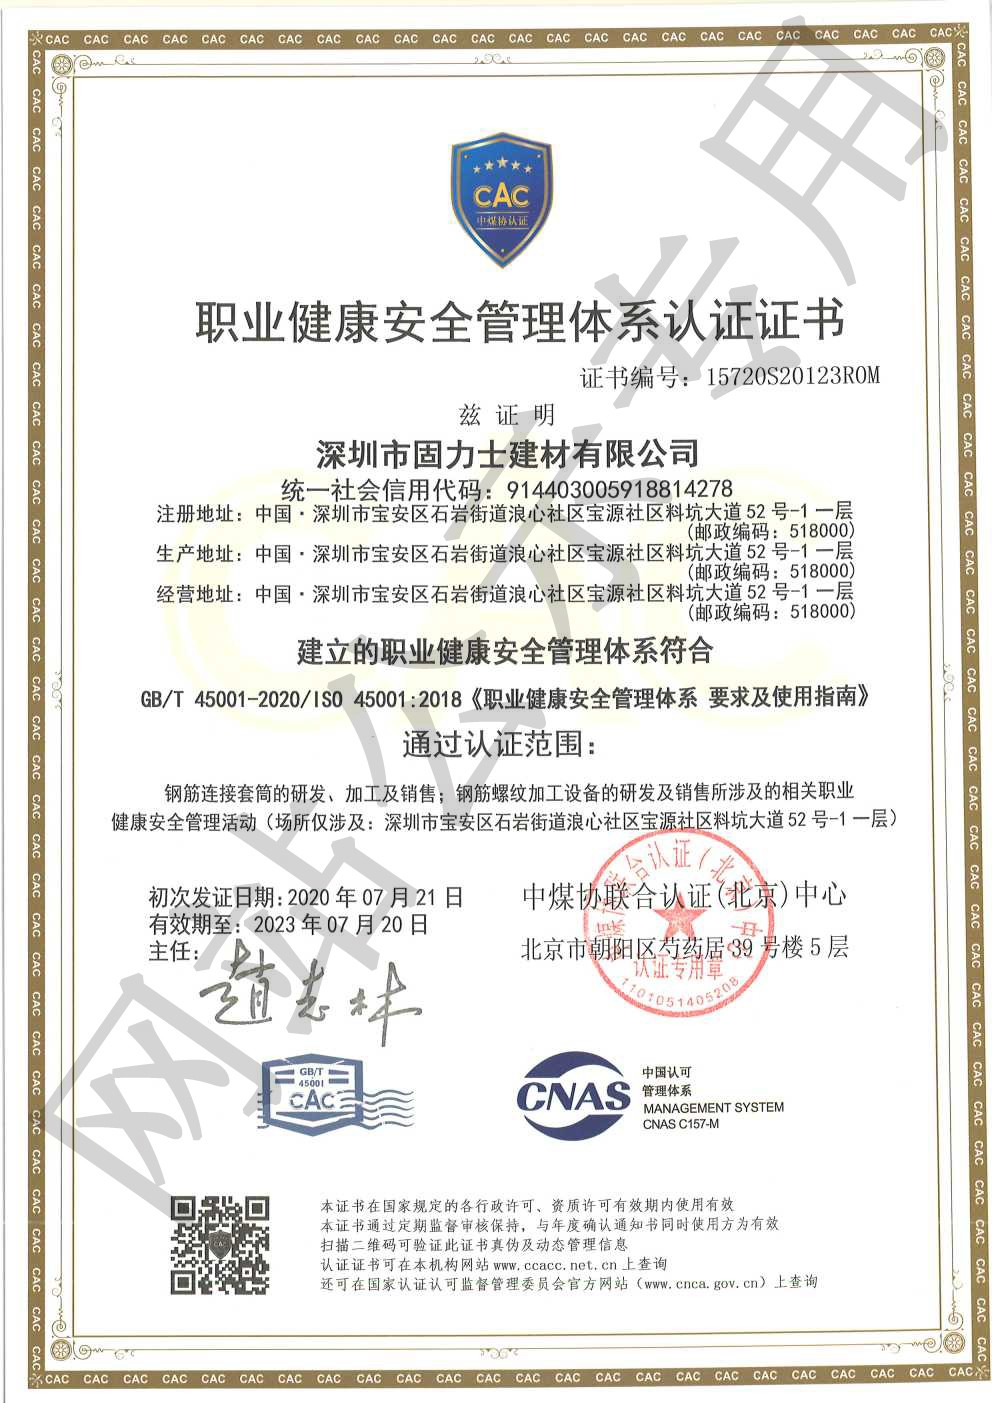 革吉ISO45001证书